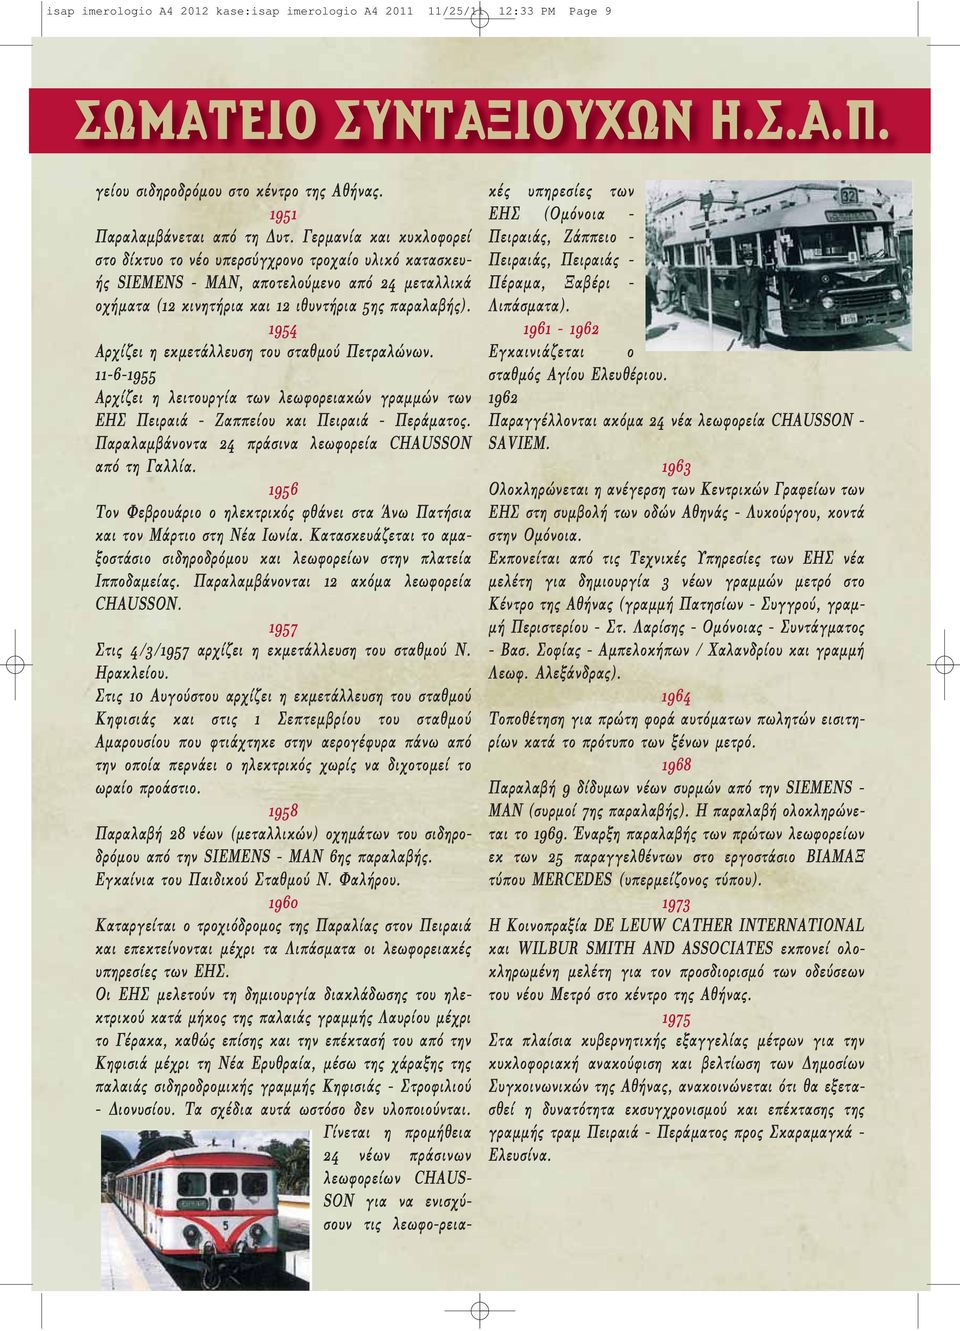 1954 Αρχίζει η εκμετάλλευση του σταθμού Πετραλώνων. 11-6-1955 Αρχίζει η λειτουργία των λεωφορειακών γραμμών των ΕΗΣ Πειραιά - Ζαππείου και Πειραιά - Περάματος.